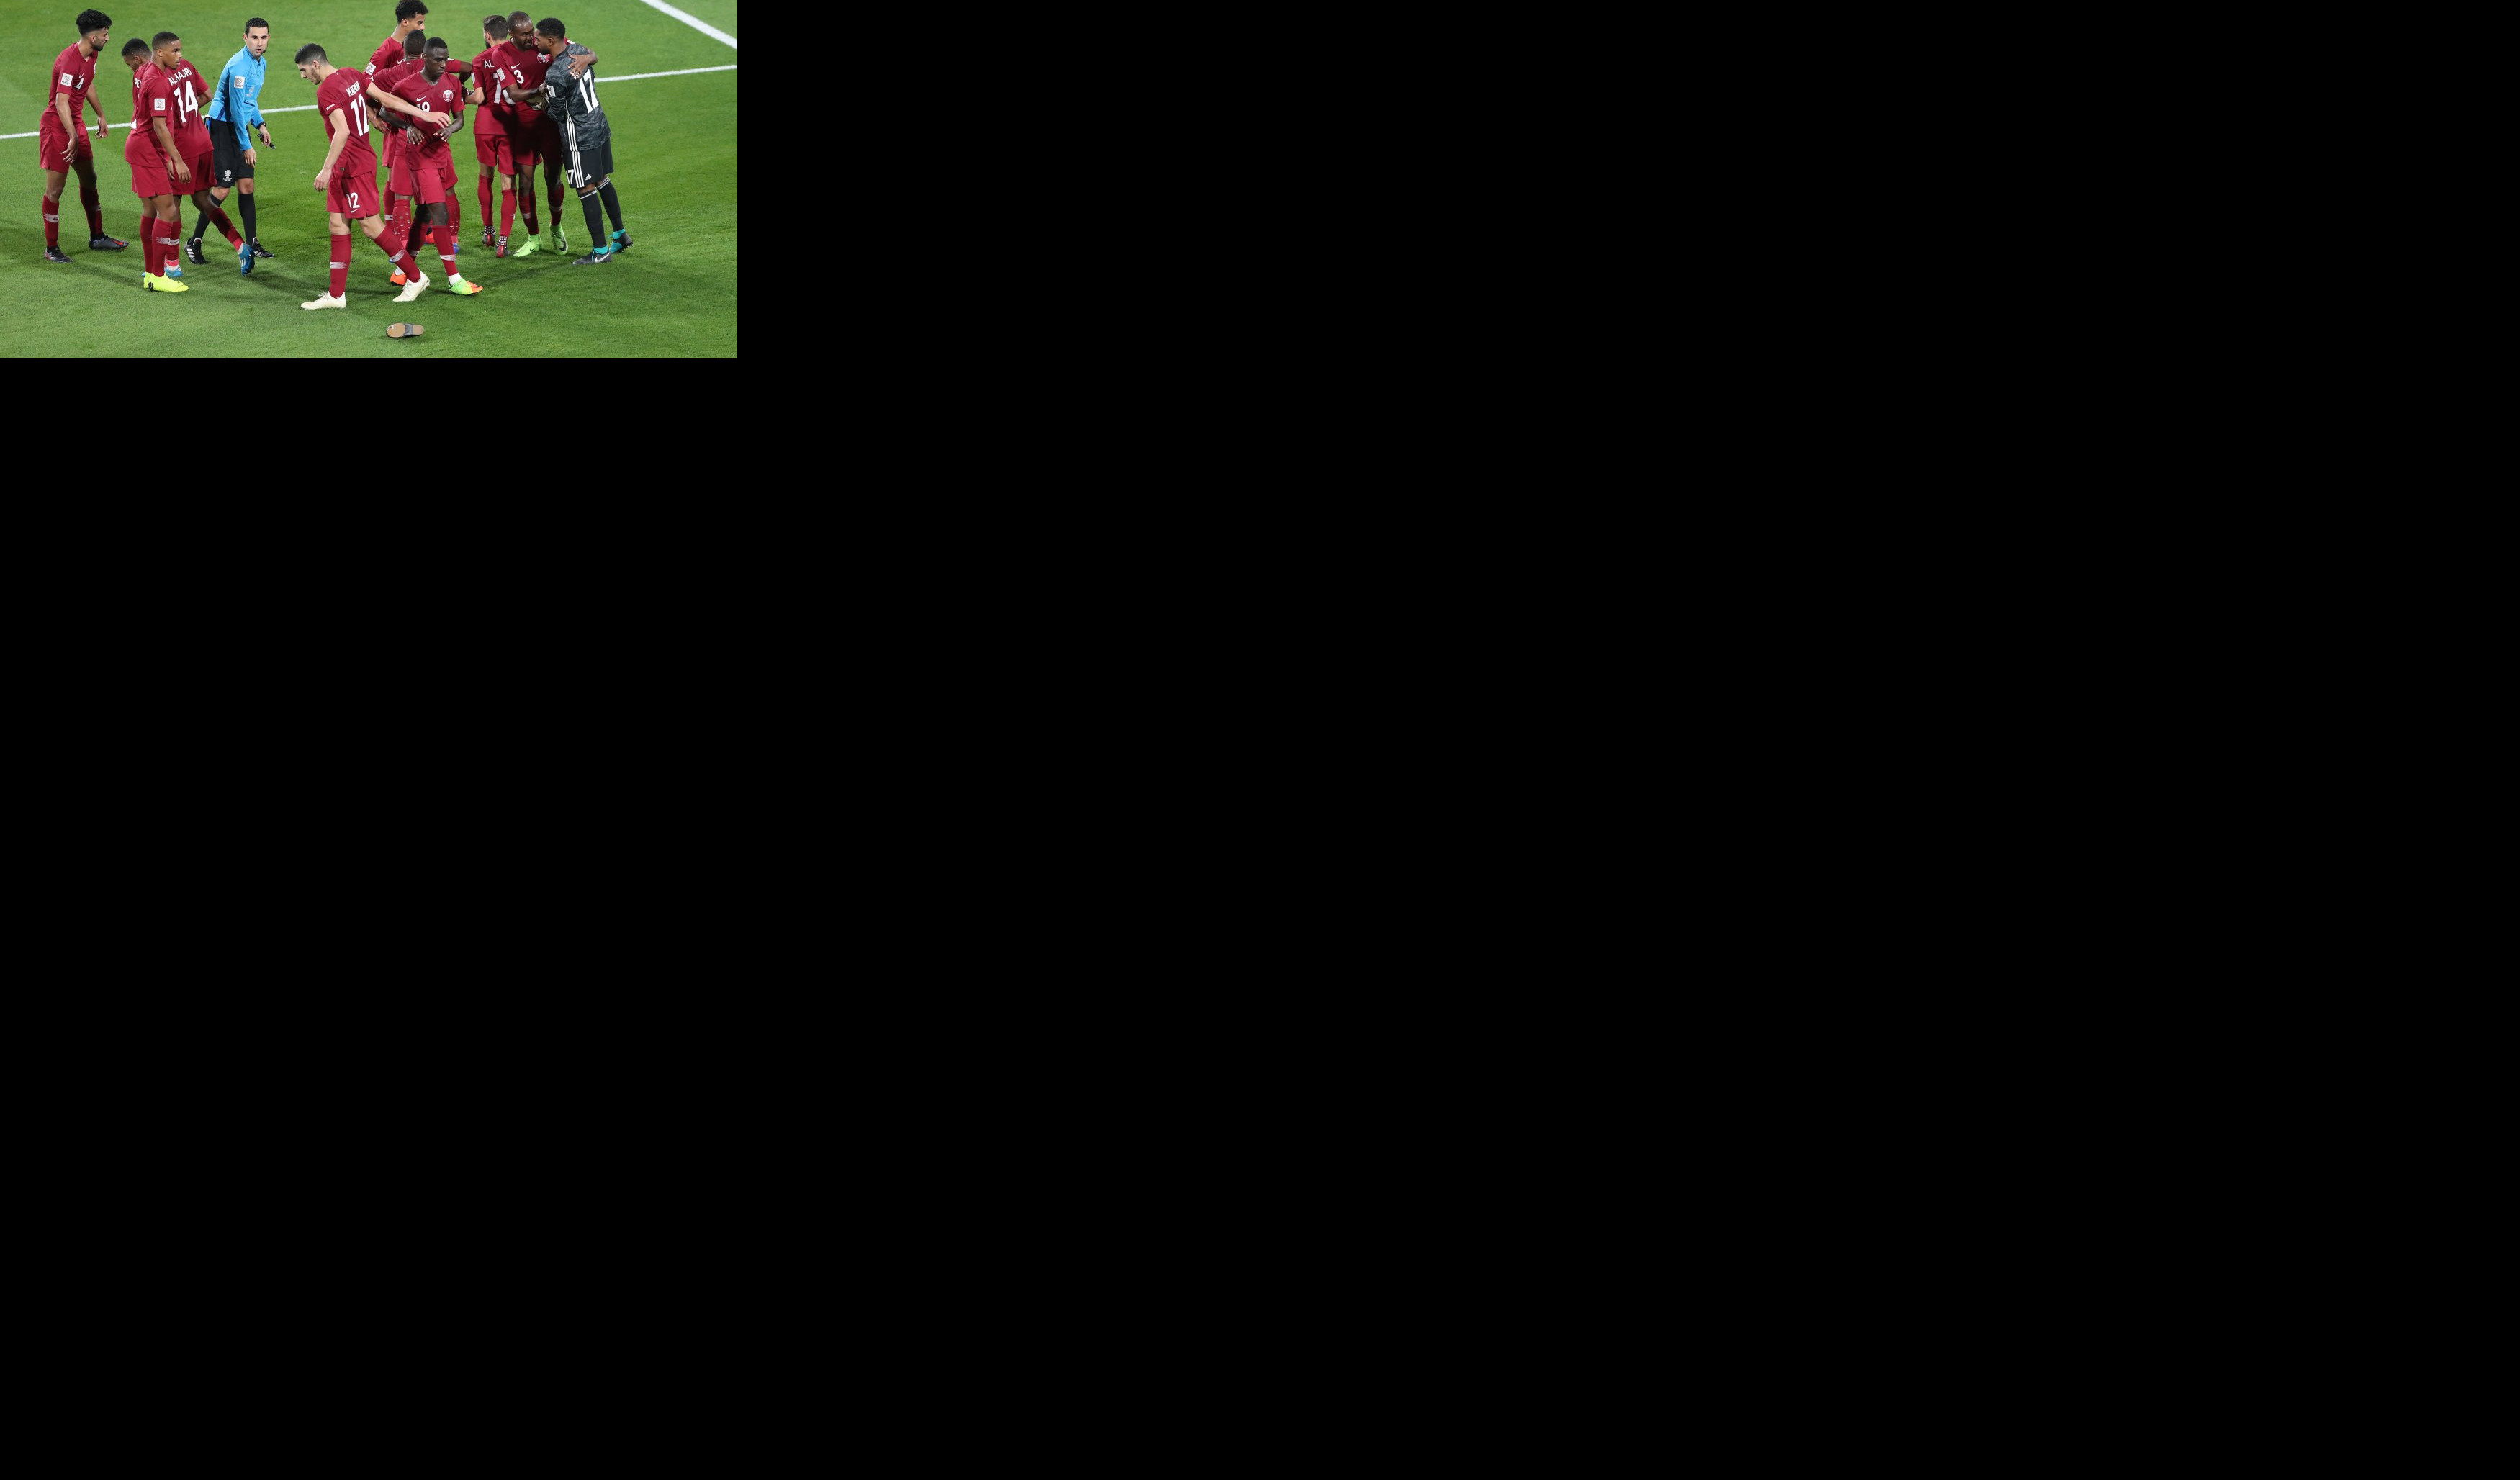 (VIDEO/FOTO) LETELE CIPELE NA SVE STRANE! Navijači UAE gađali igrače Katara, a tek da vidite reakciju golmana